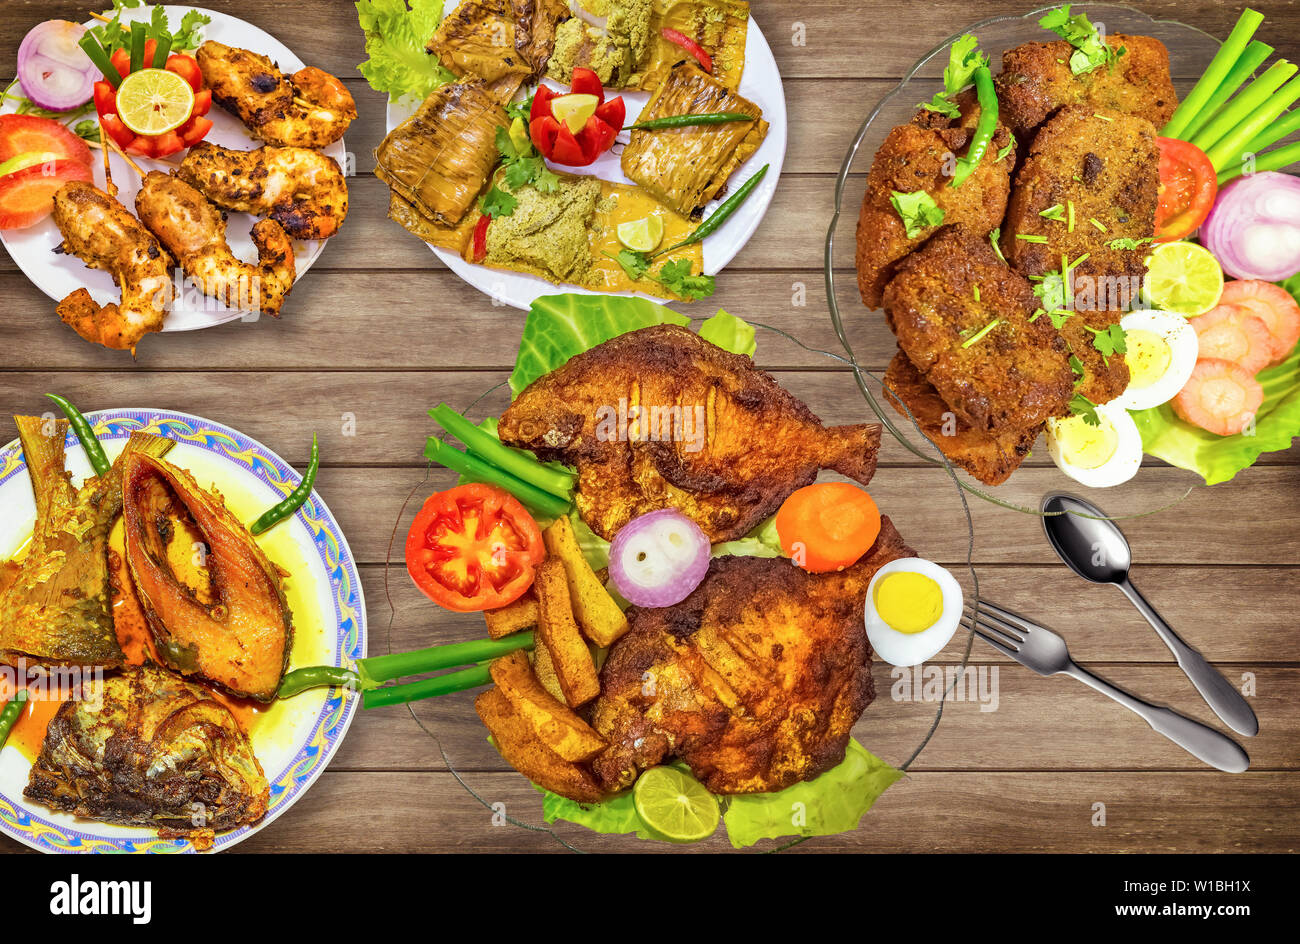 Poissons plats indiens alimentaire comprenant des poissons frits pomfret hilsa avec de l'huile de poisson au curry et à la crevette croustillant frit servi avec de la salade sur la table en bois Banque D'Images